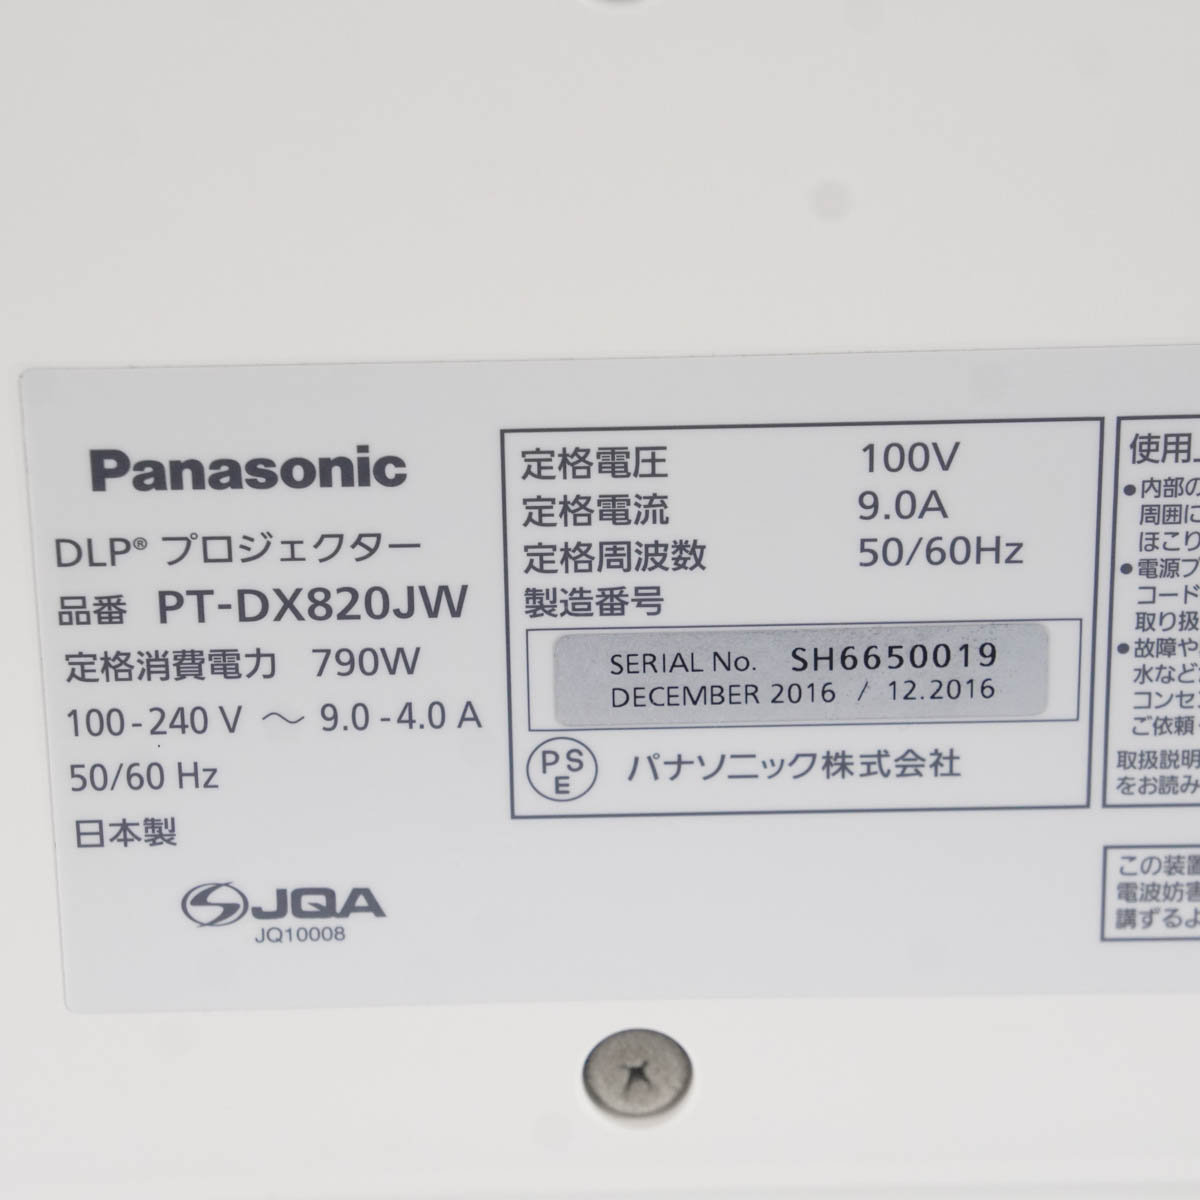 JB]USED 現状販売 ランプ8142時間 Panasonic PT-DX820JW